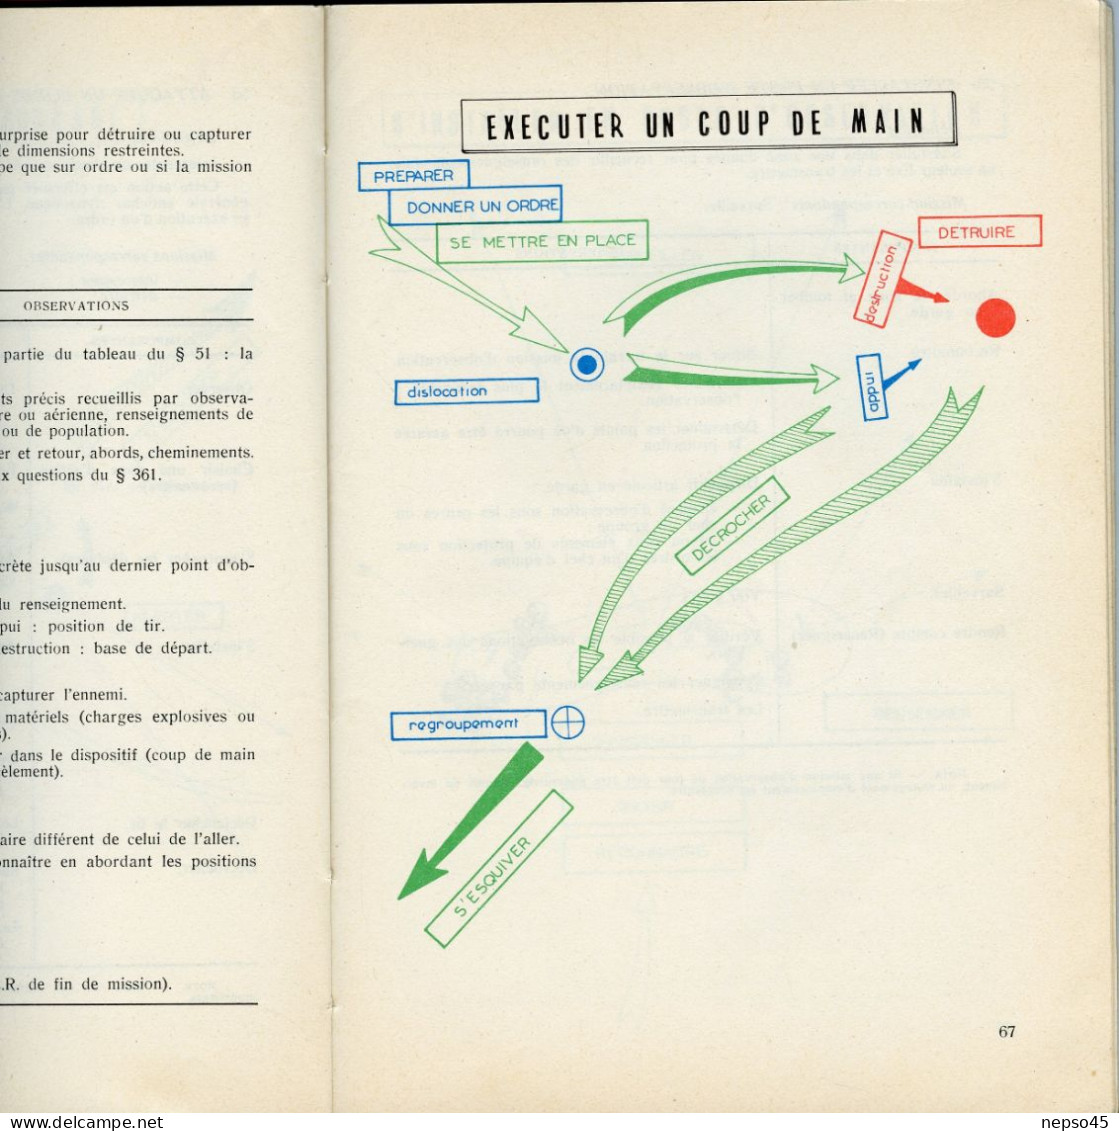 Notice sur le combat à pied de la section de Grenadiers - Voltigeurs.édition 1972.